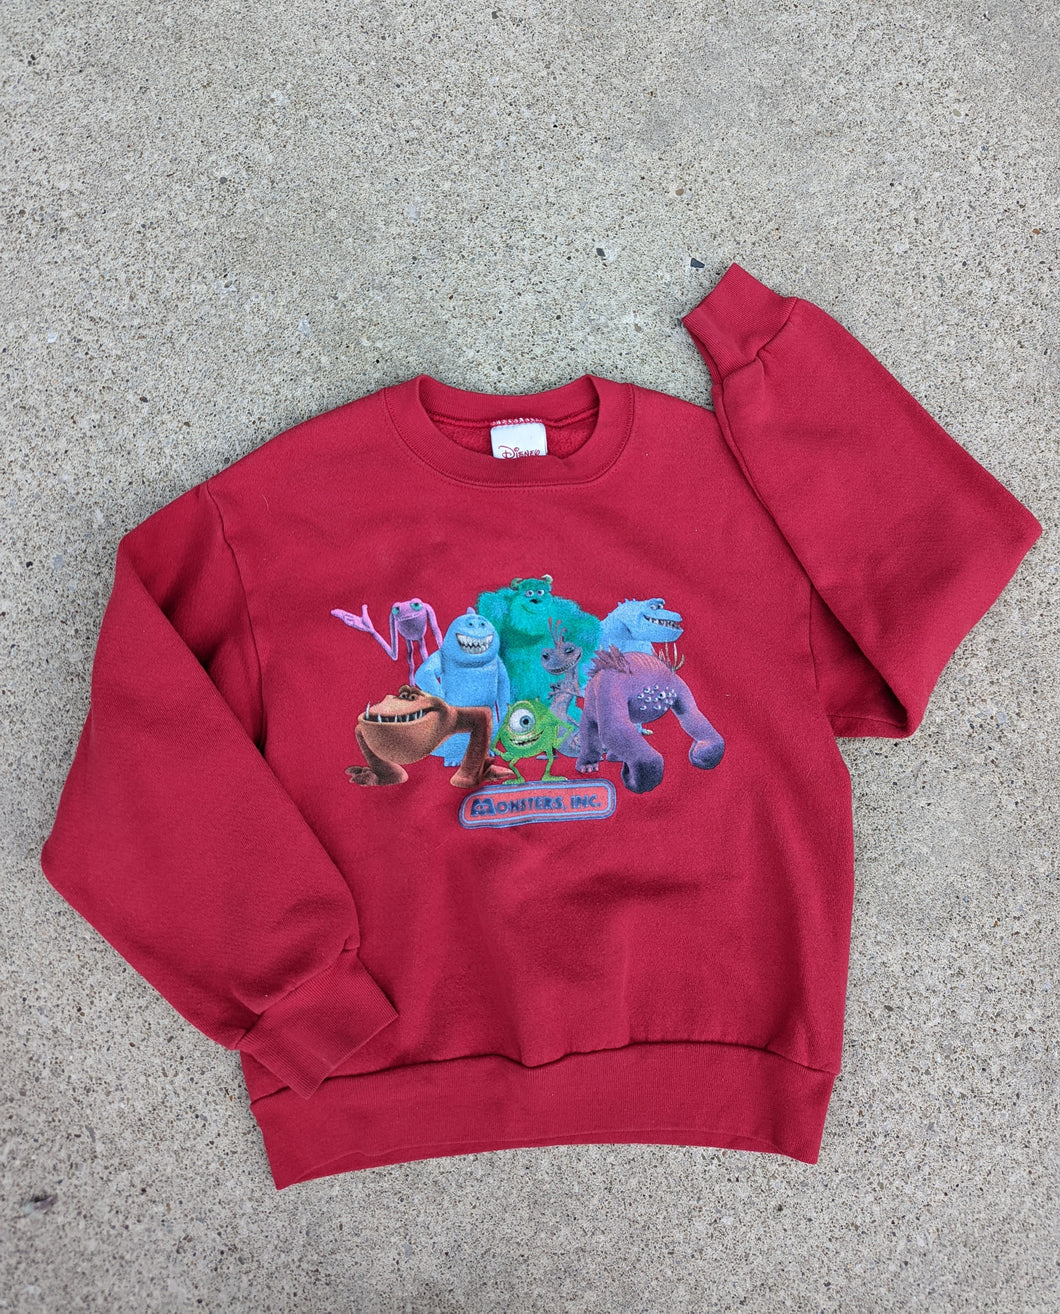 Monsters Inc Sweatshirt 7/8y